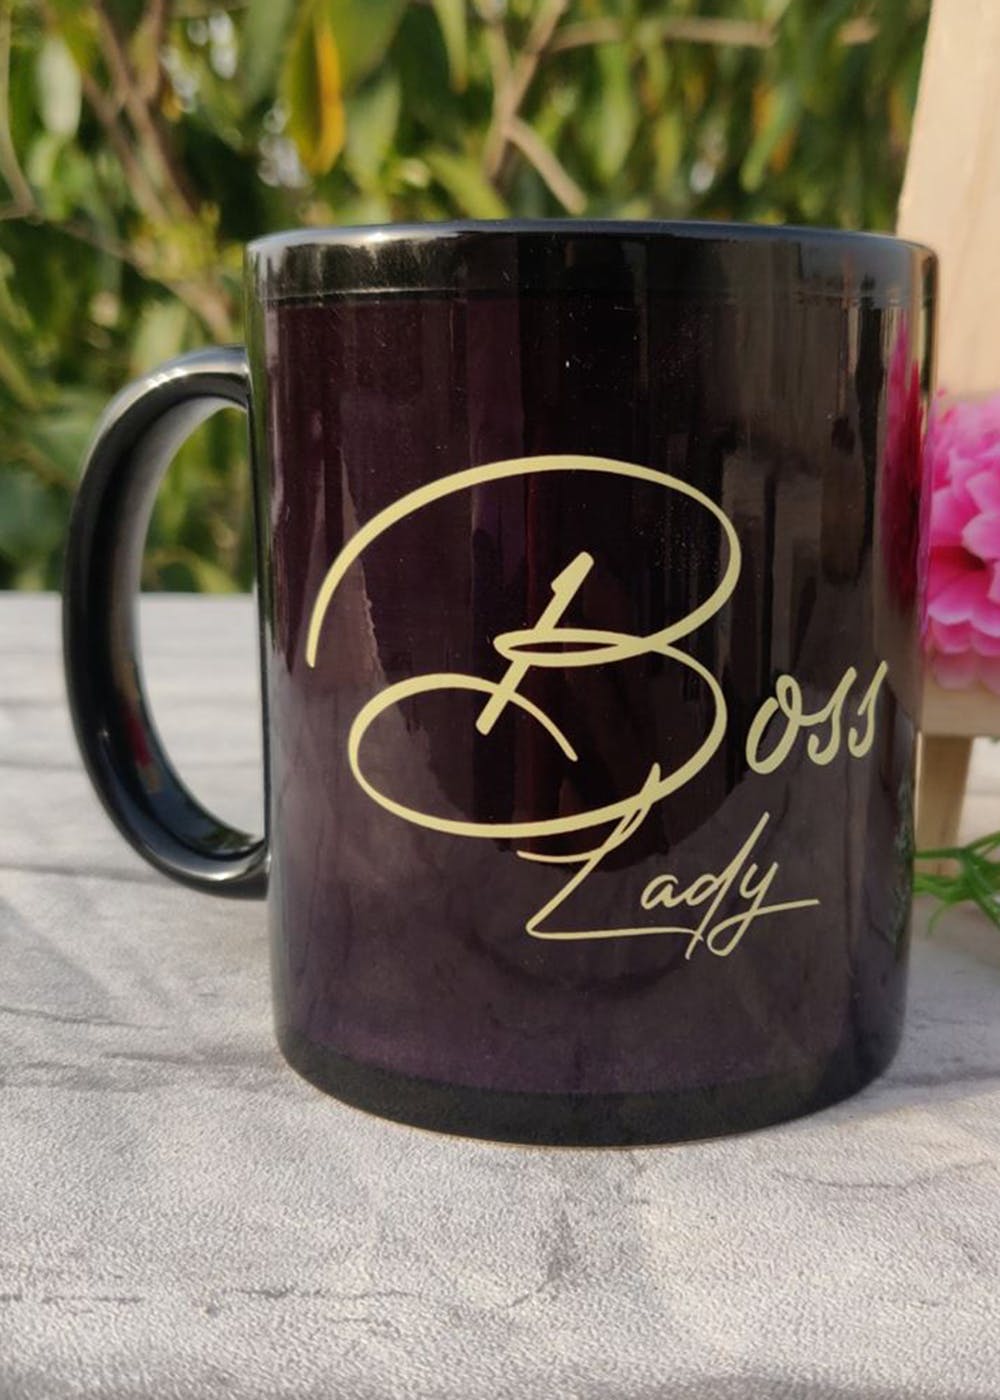 Get 'Boss Lady' Black Coffee Mug at ₹ 404 | LBB Shop